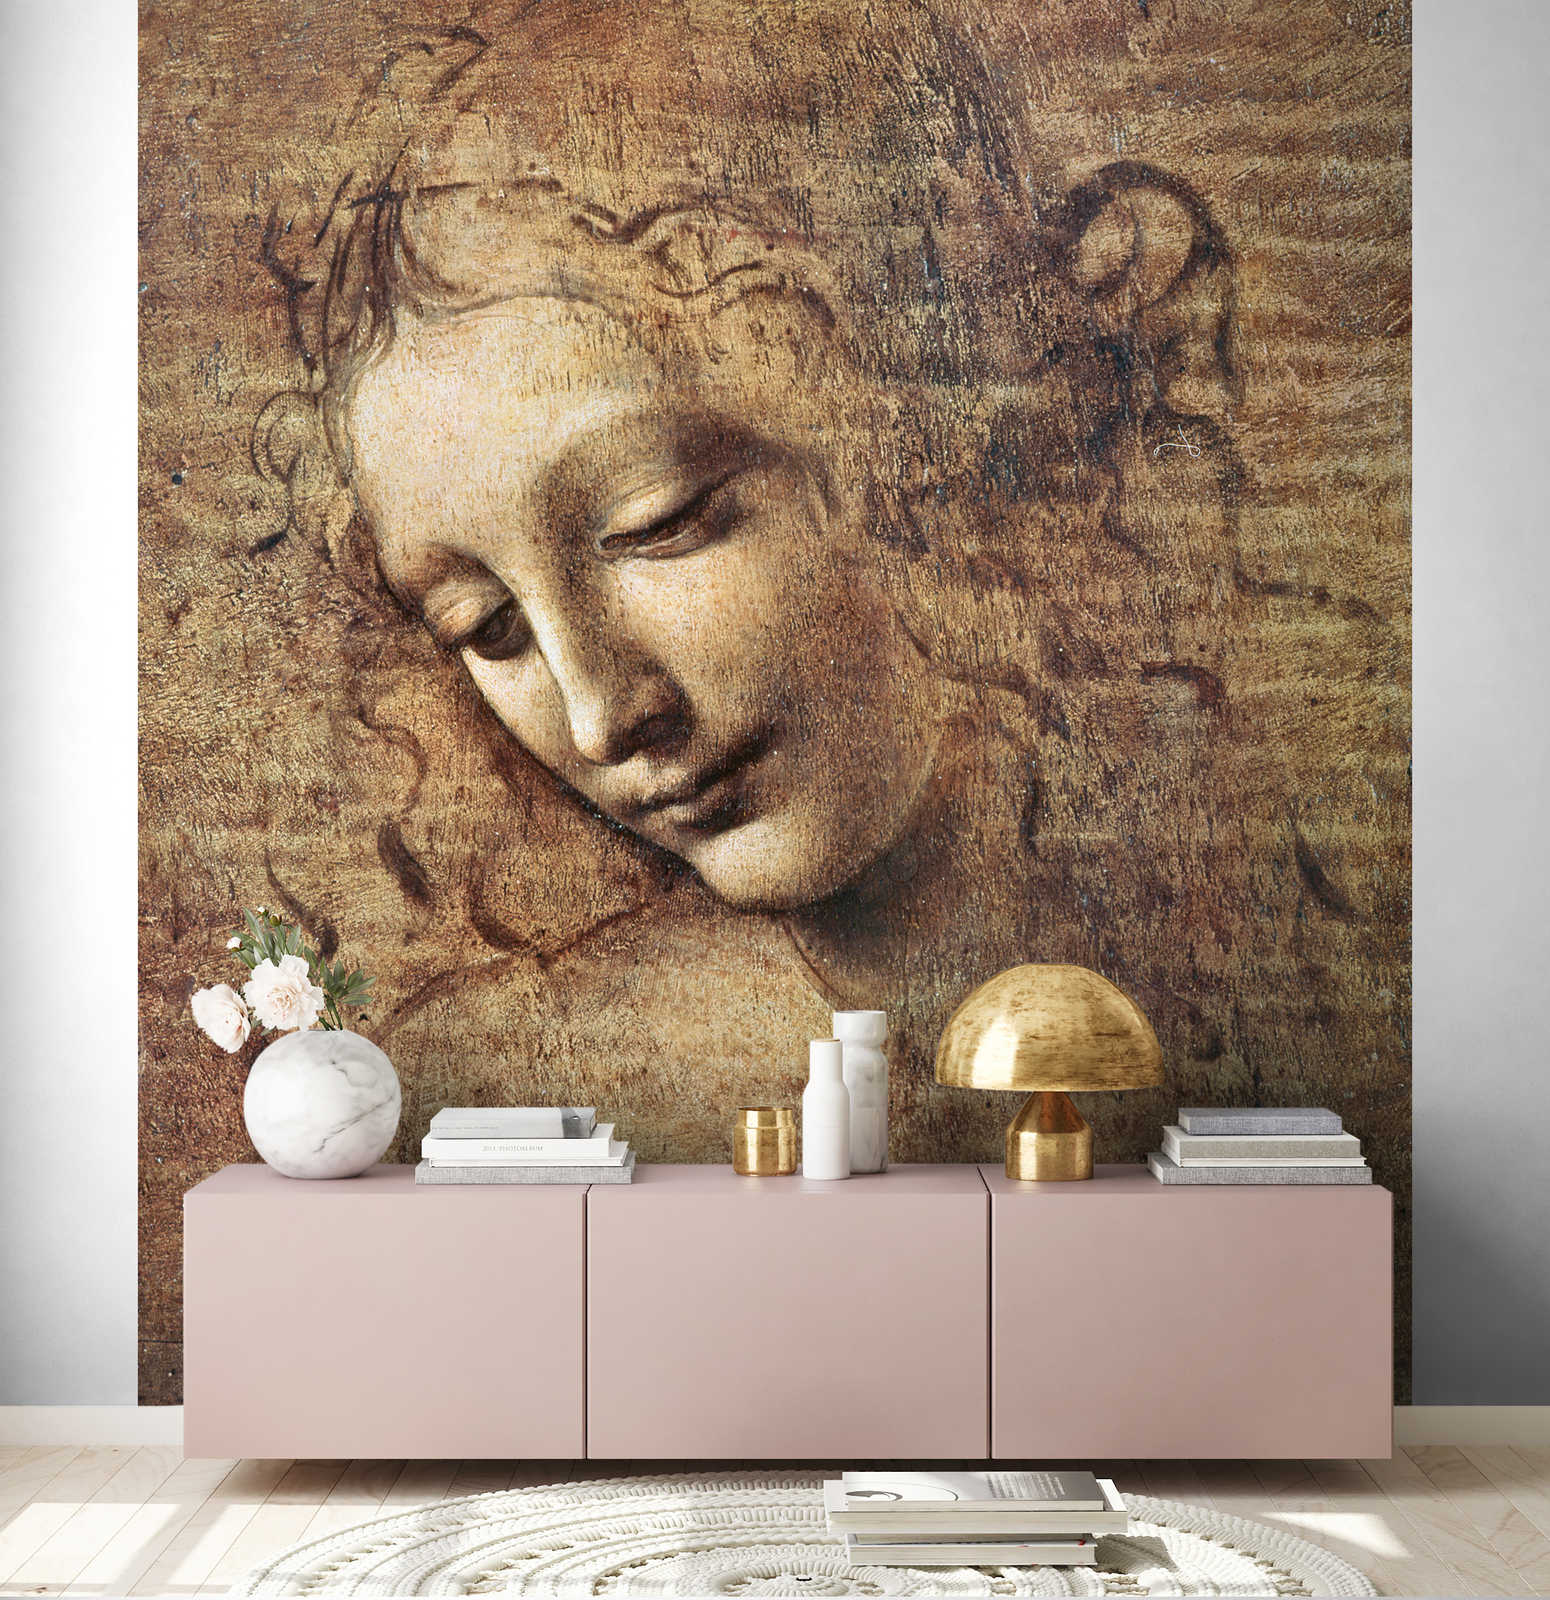             Muurschildering "Hoofd van een jonge vrouw met verward haar" van Leonardo da Vinci
        